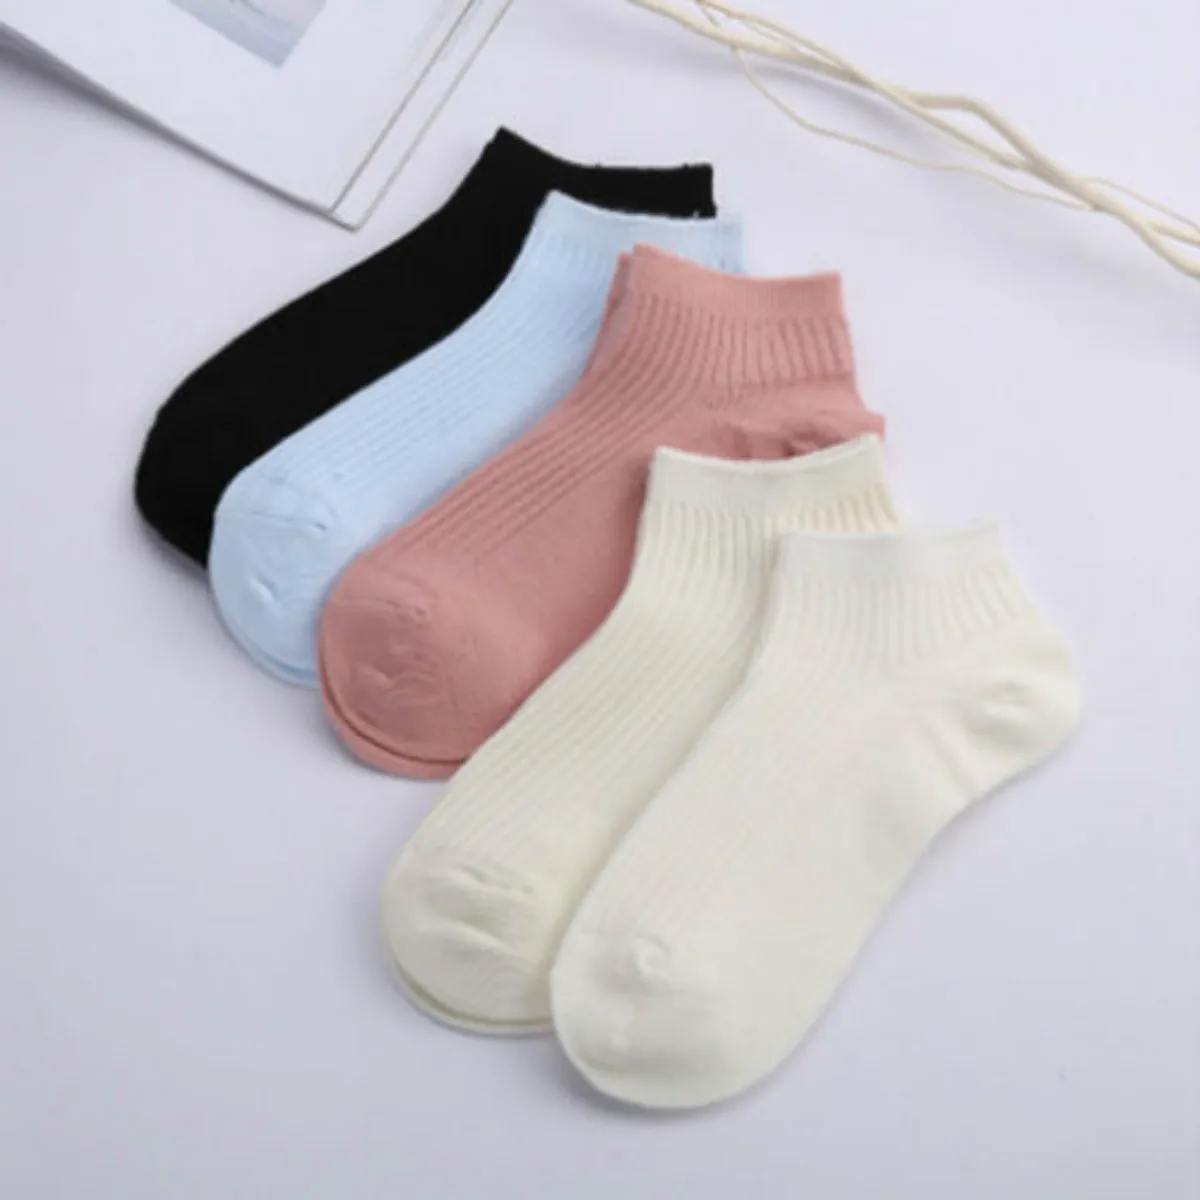 10 пар Для женщин девушка хлопок Повседневное лодыжки мягкие носки Дизайн носки бесплатная Размеры